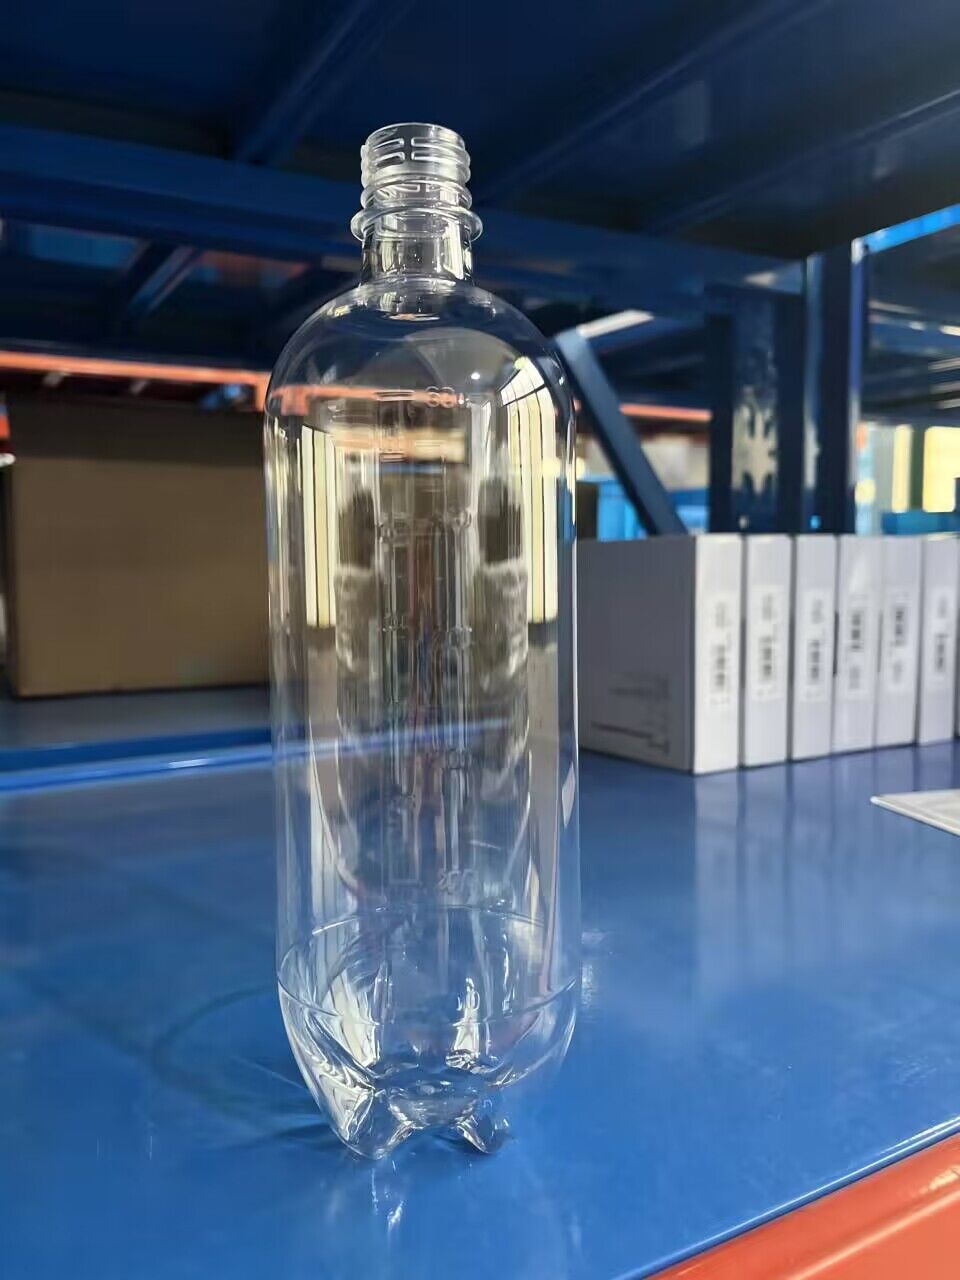 1Pc Botella purificadora de agua de repuesto para unidad de entrega dental portátil Greeloy